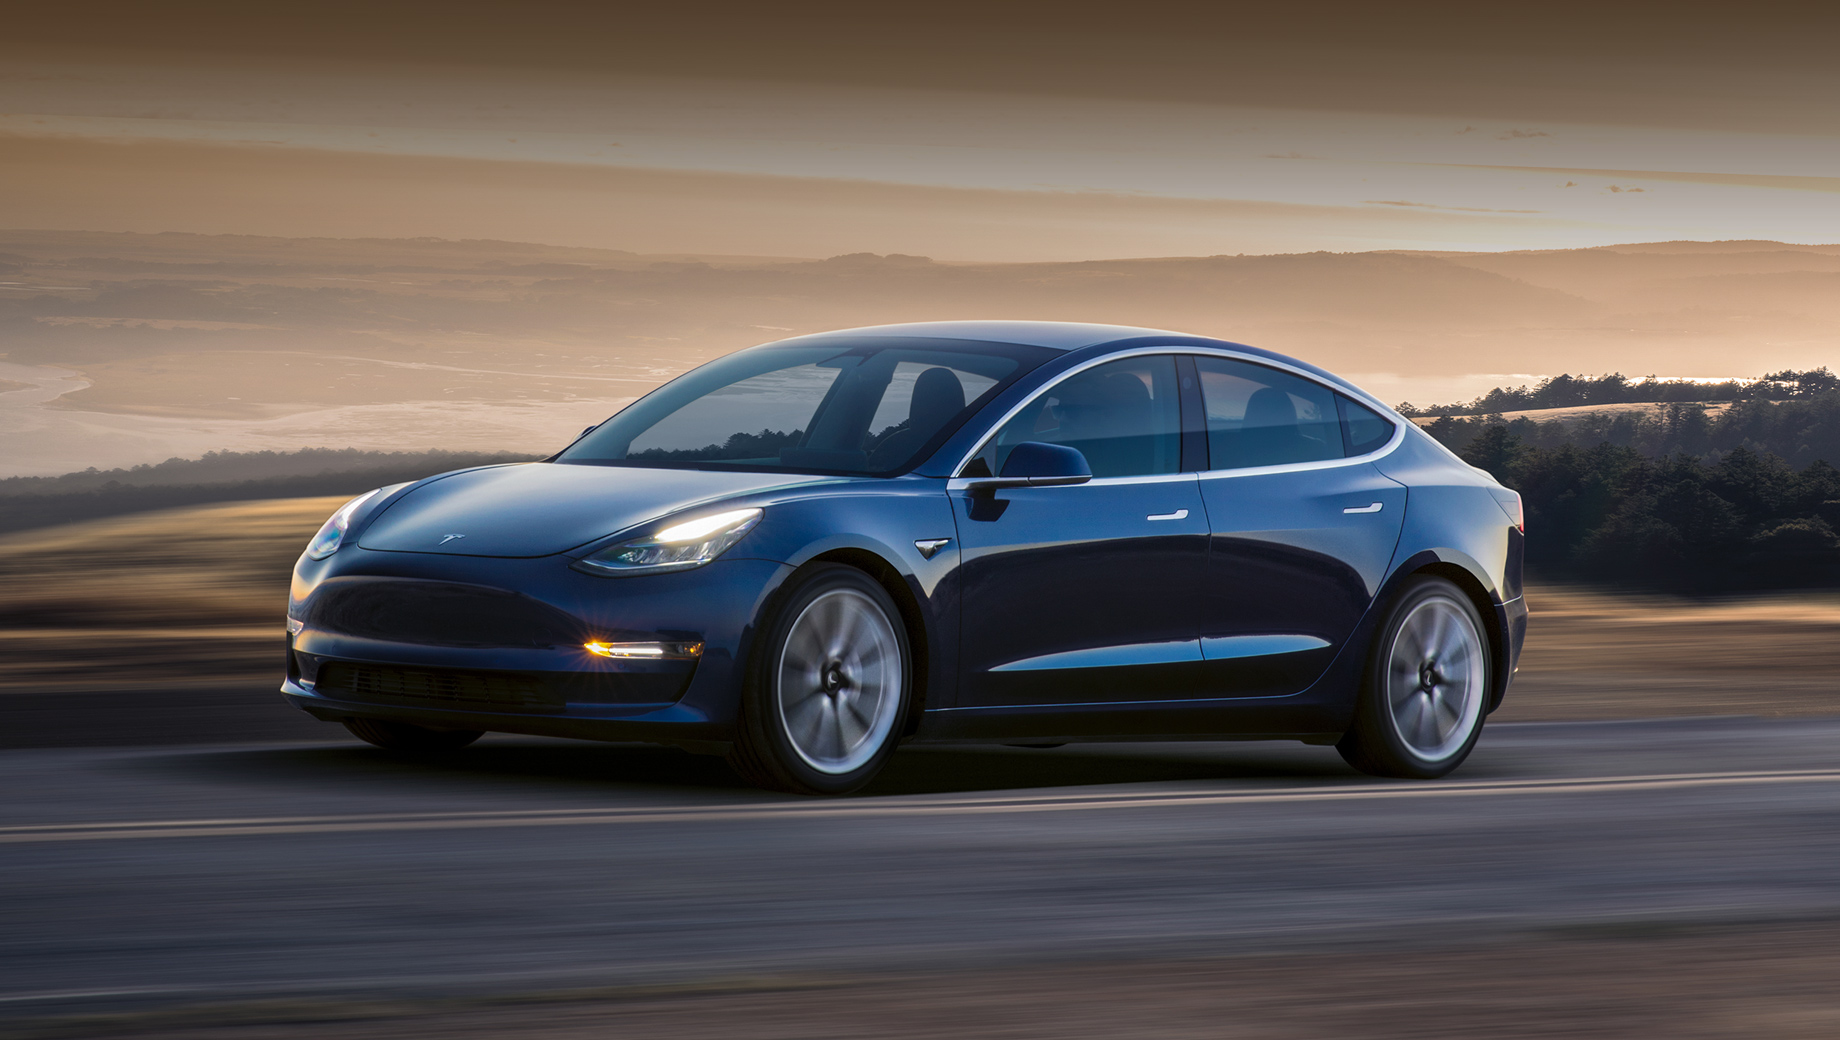 Tesla model 3. Выставленные на продажу машины обладают пробегом до 1000 миль и, скорее всего, использовались для тест-драйвов или каких-то проверок, но не были ранее в руках автовладельцев.